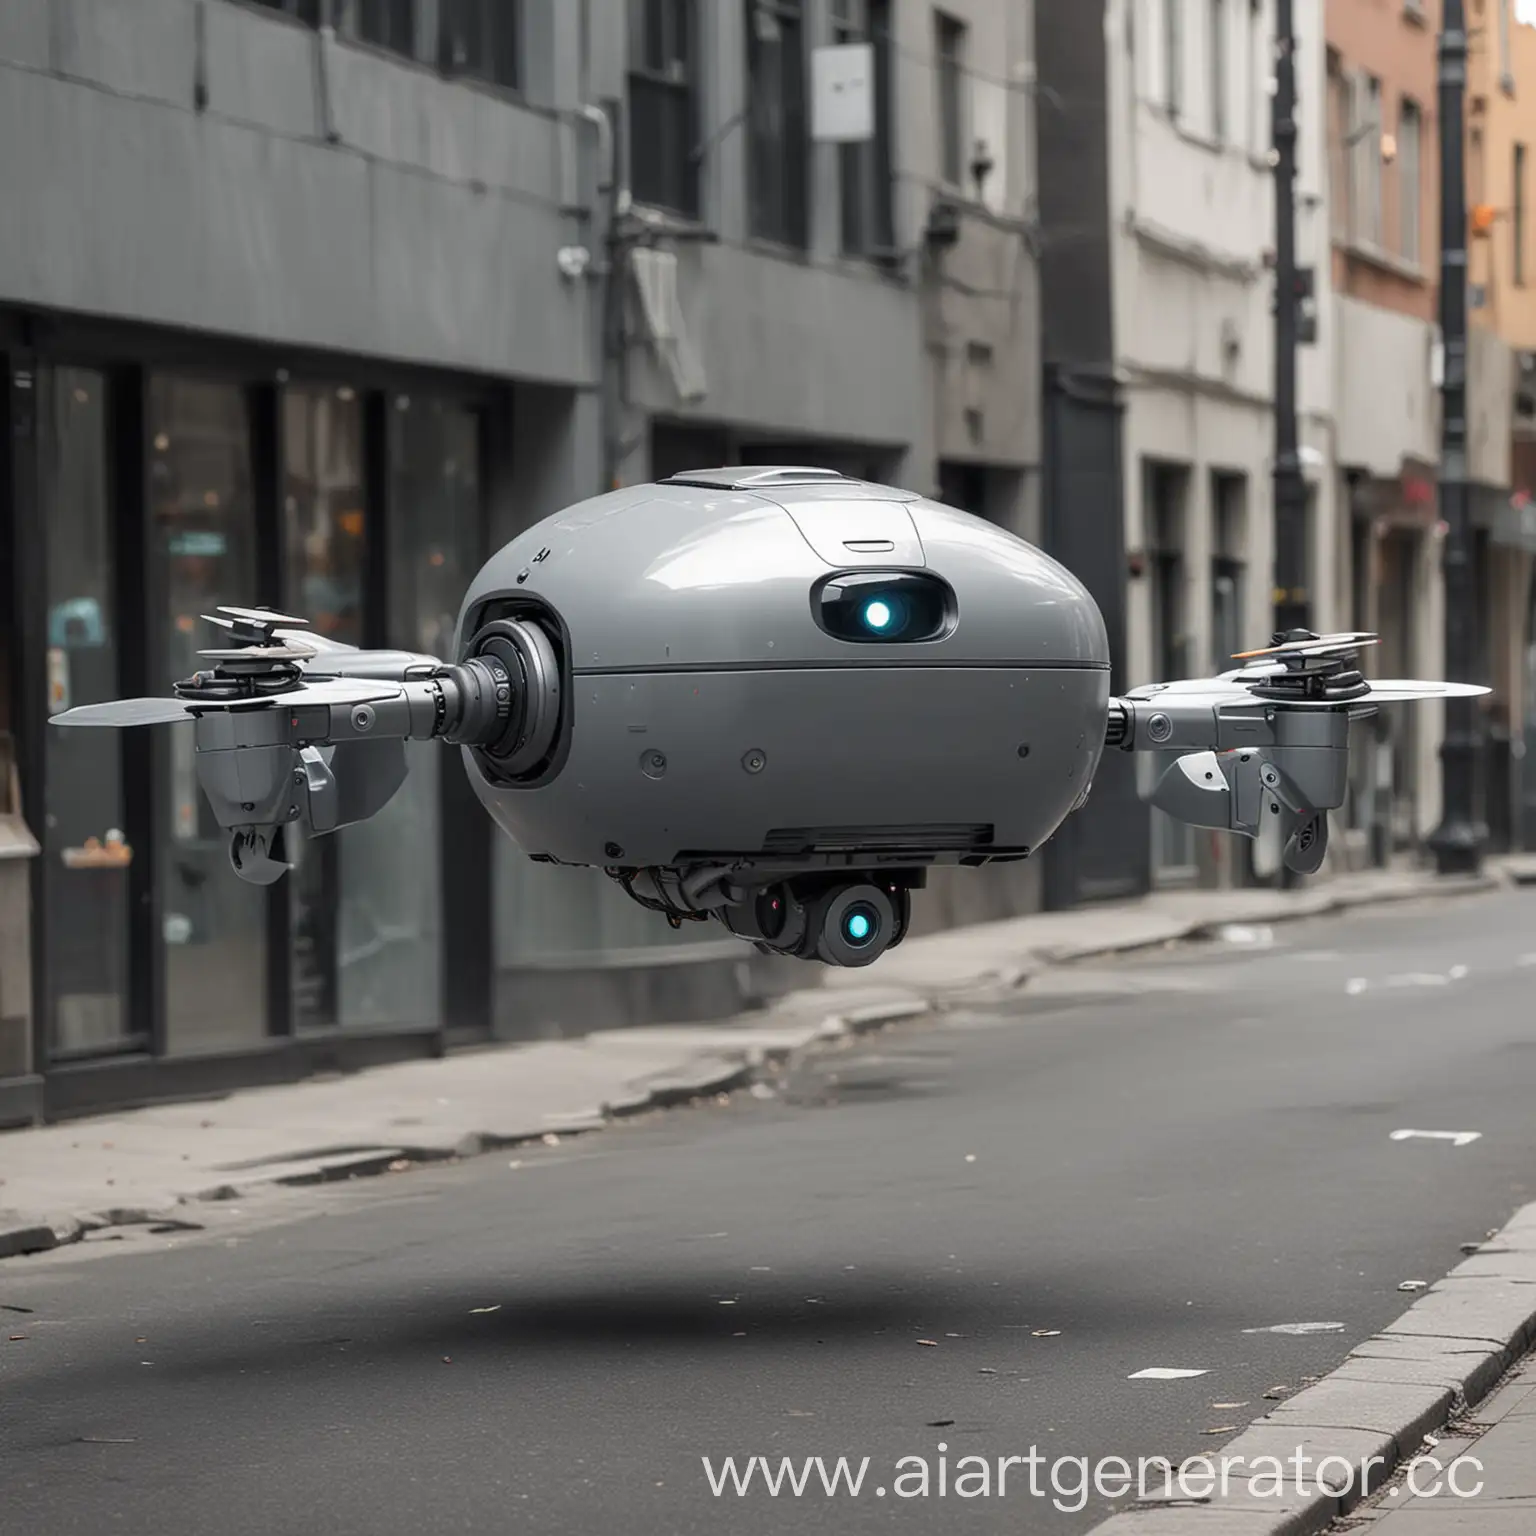 летающий на улице серый круглый робот-доставщик еды, не похожий на человека. 